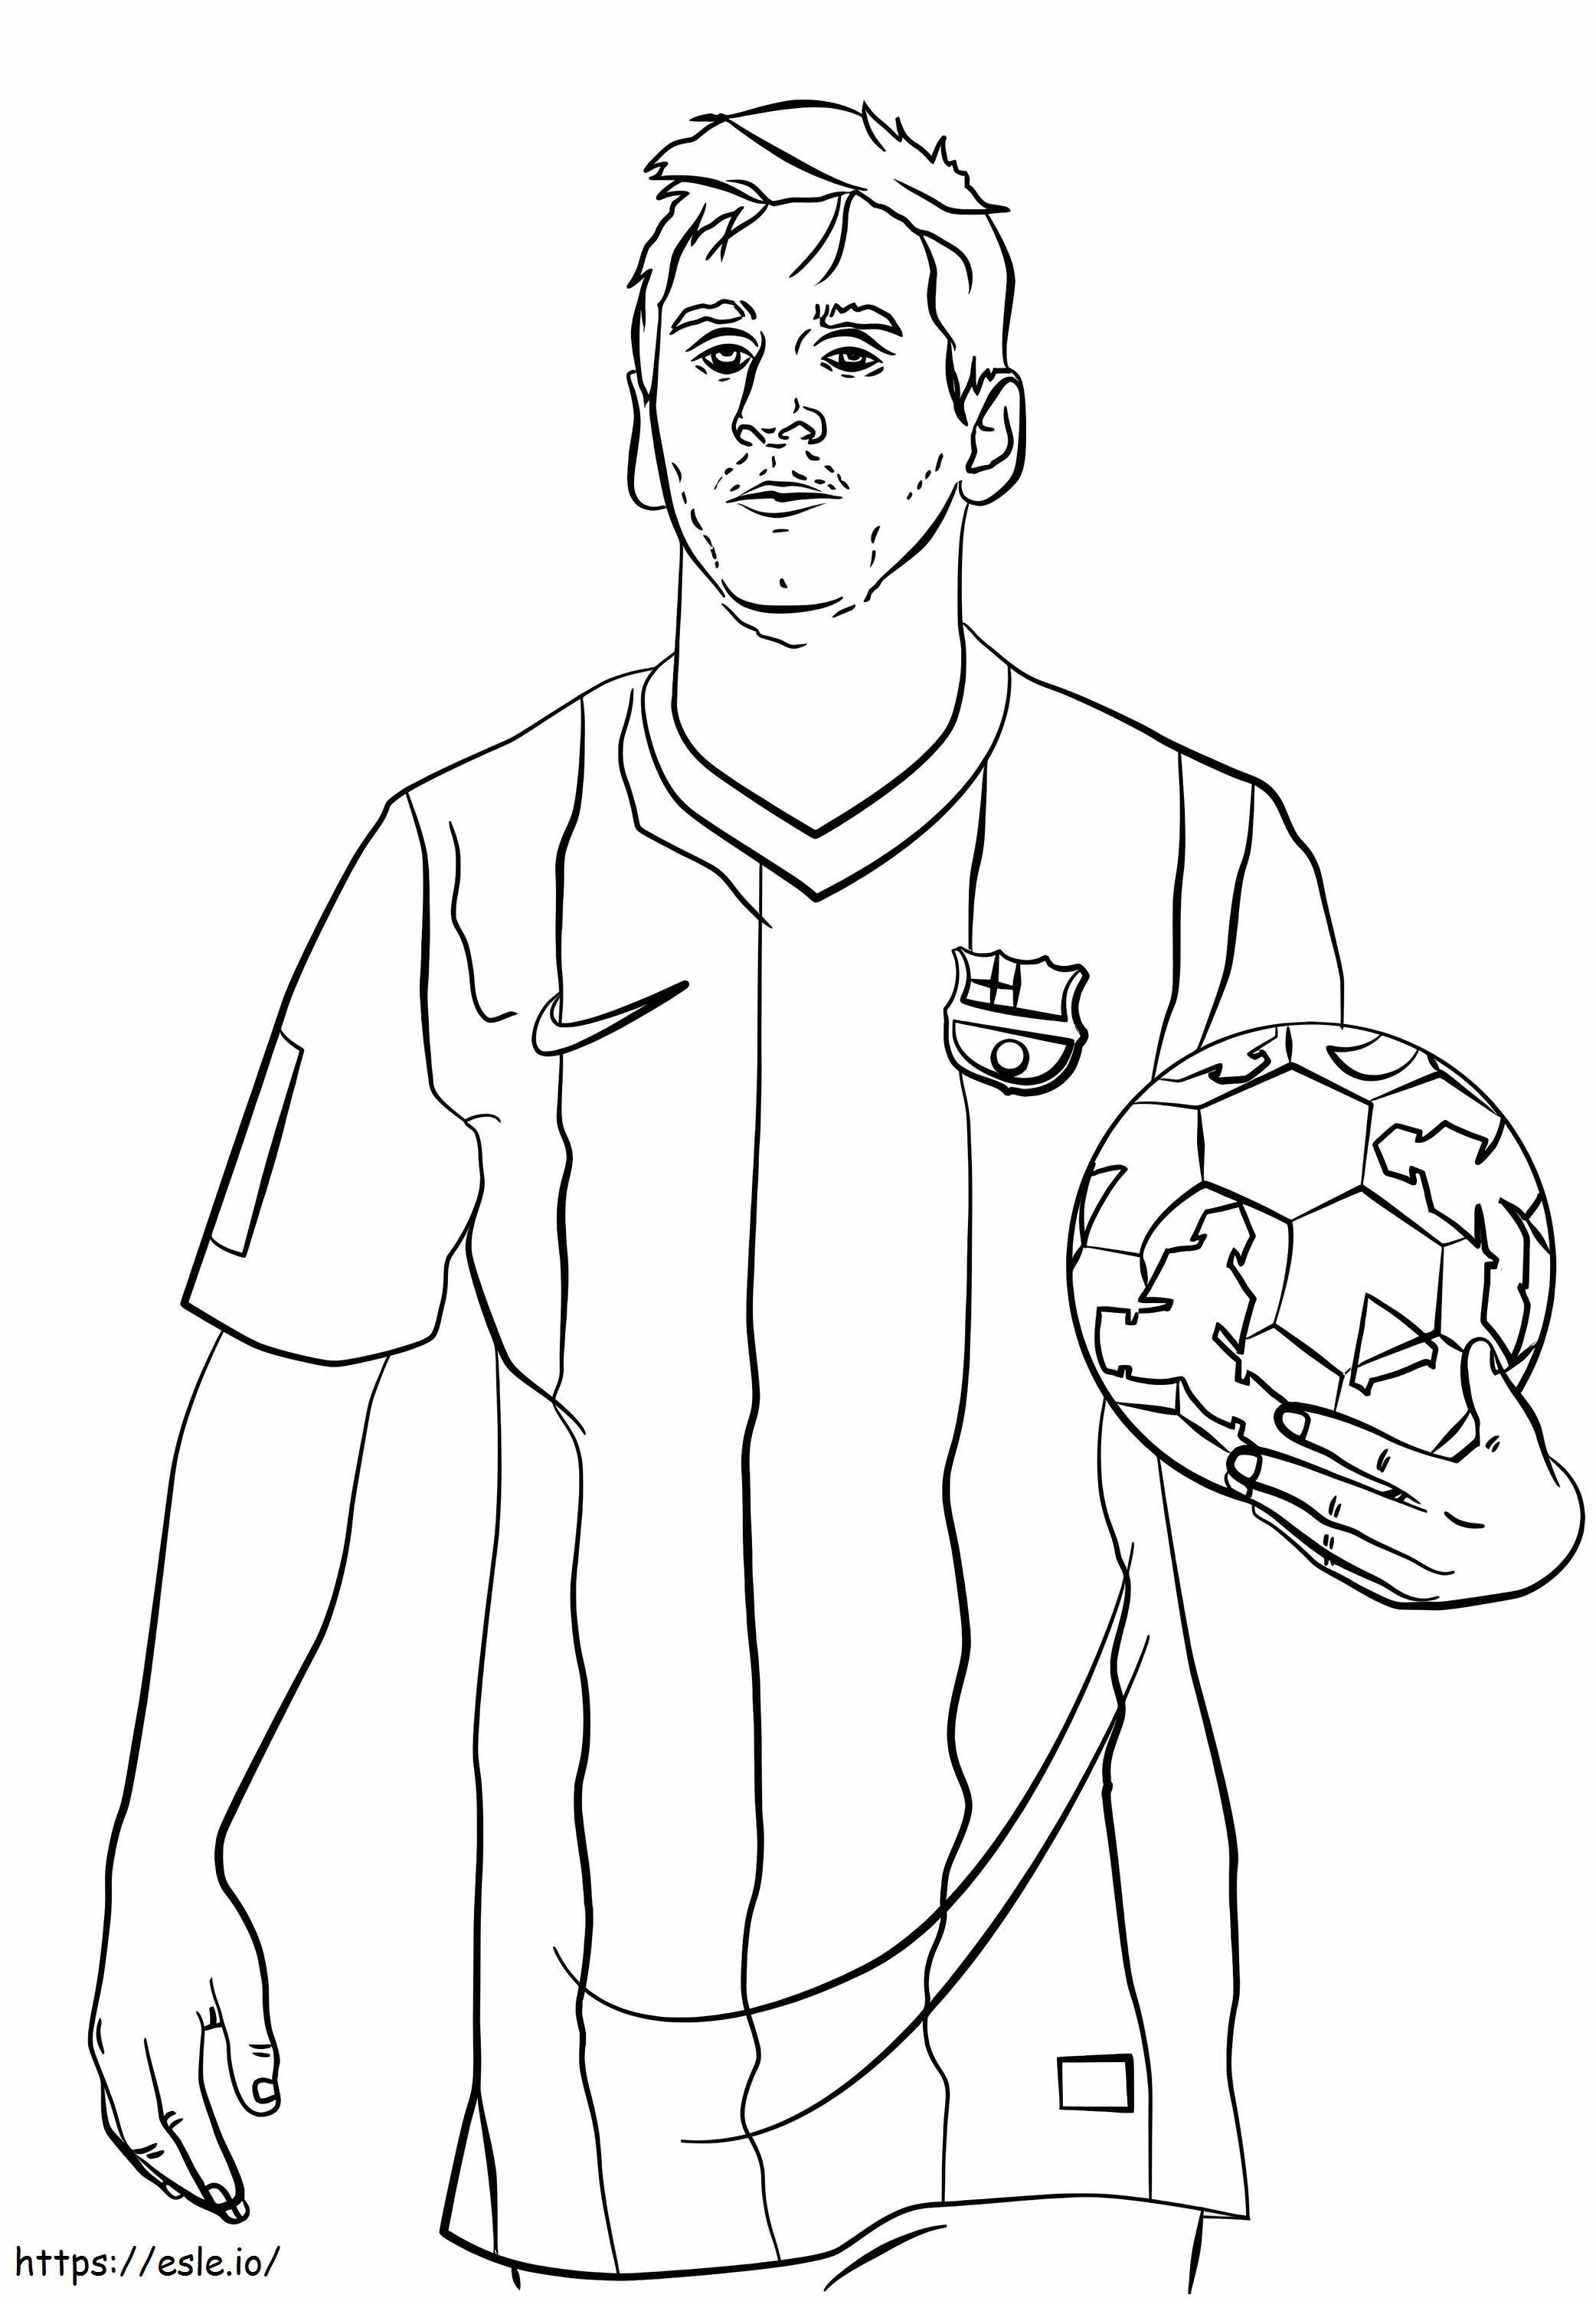 Lionel Messi ținând mingea de colorat